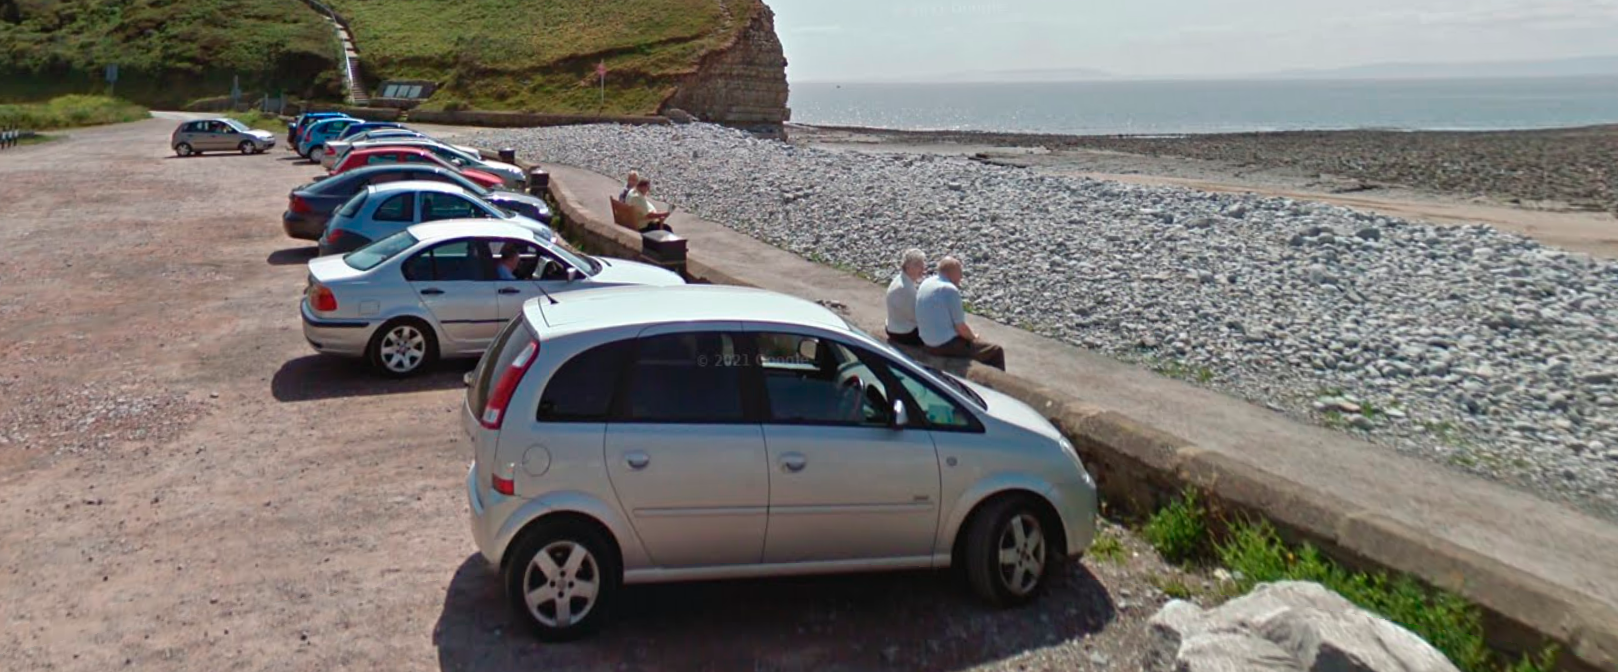 Glamorgan Council looks to increase cost of parking at coastal hotspots